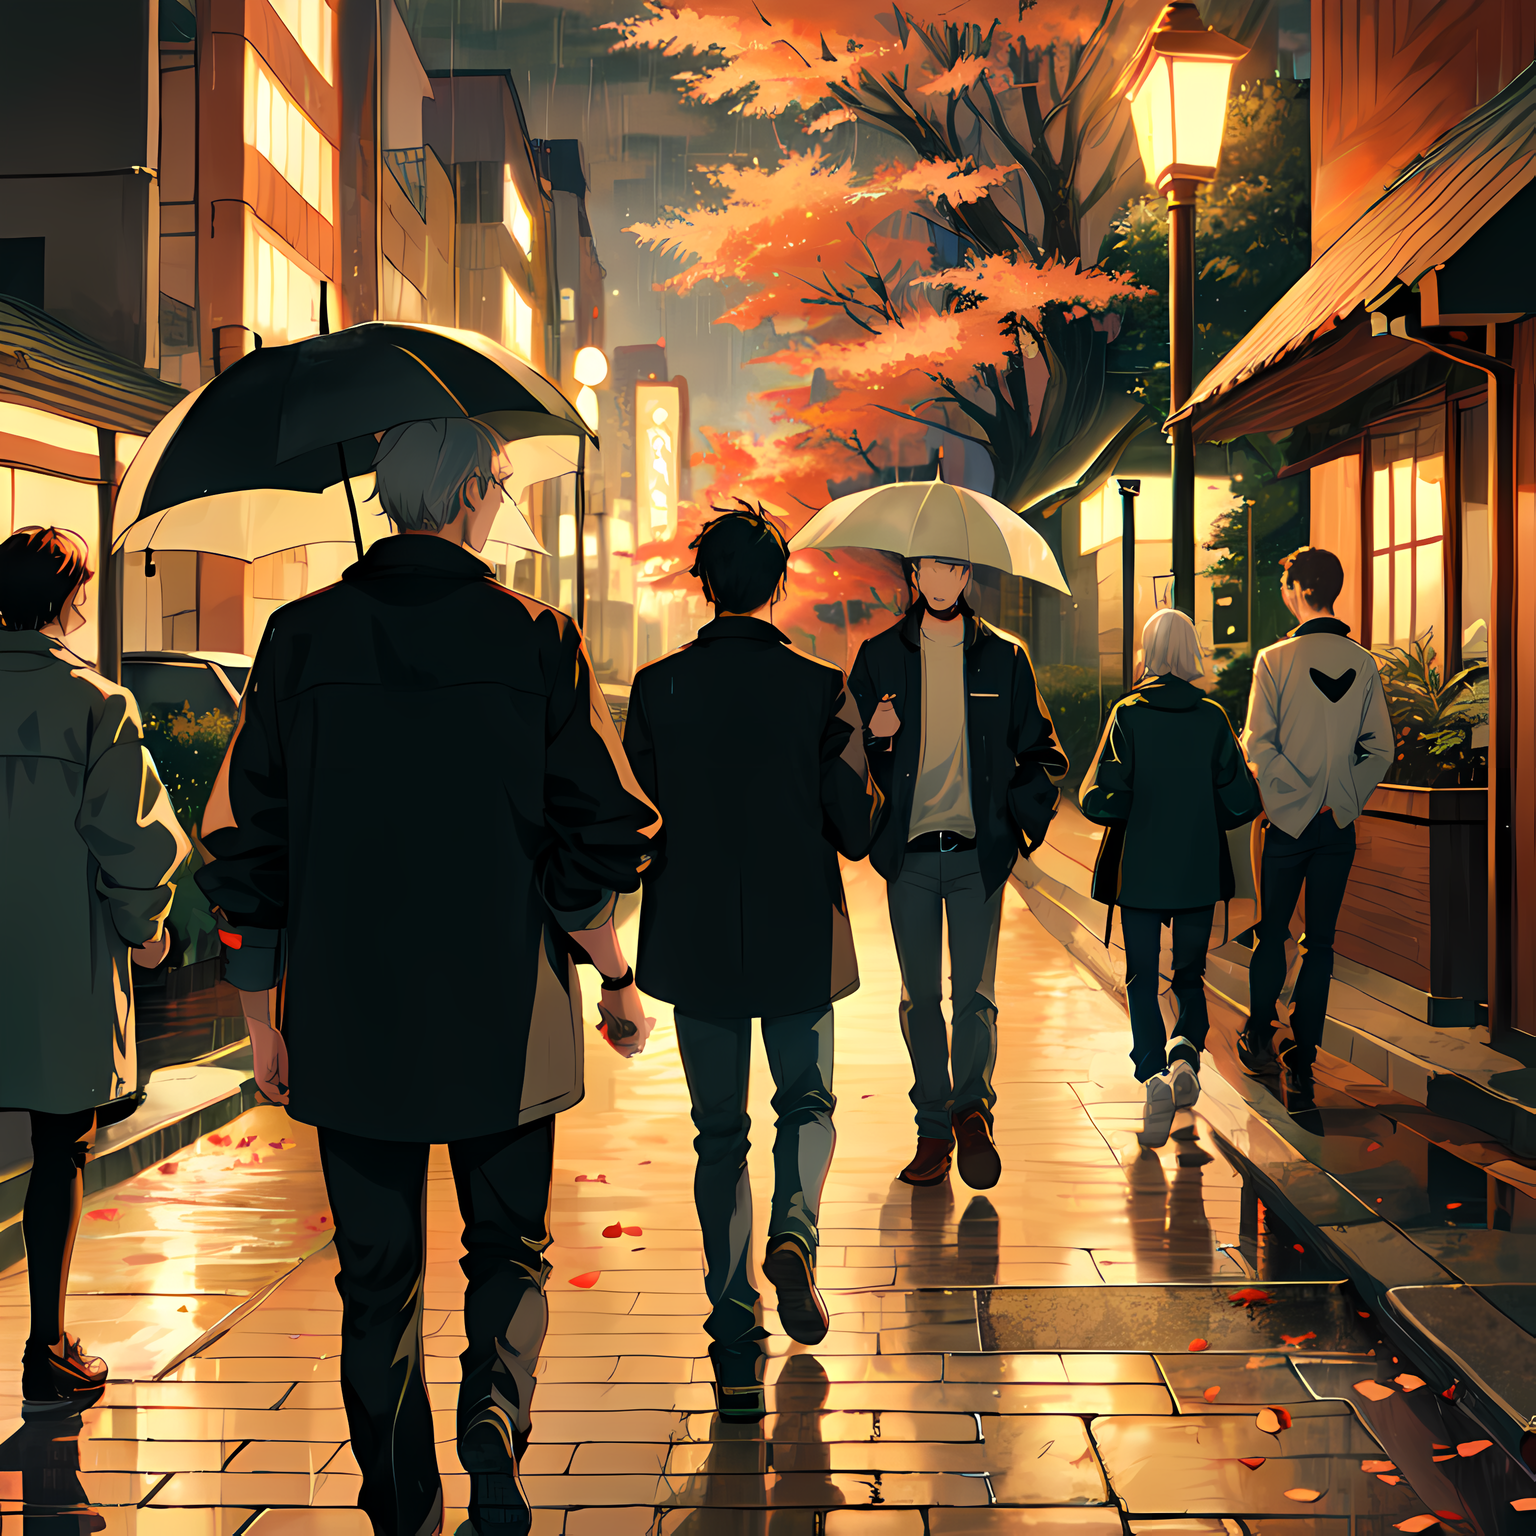 多个男孩分享一个保护伞，在枫树和秋叶的世界里黄昏之际的故事。插画图片壁纸